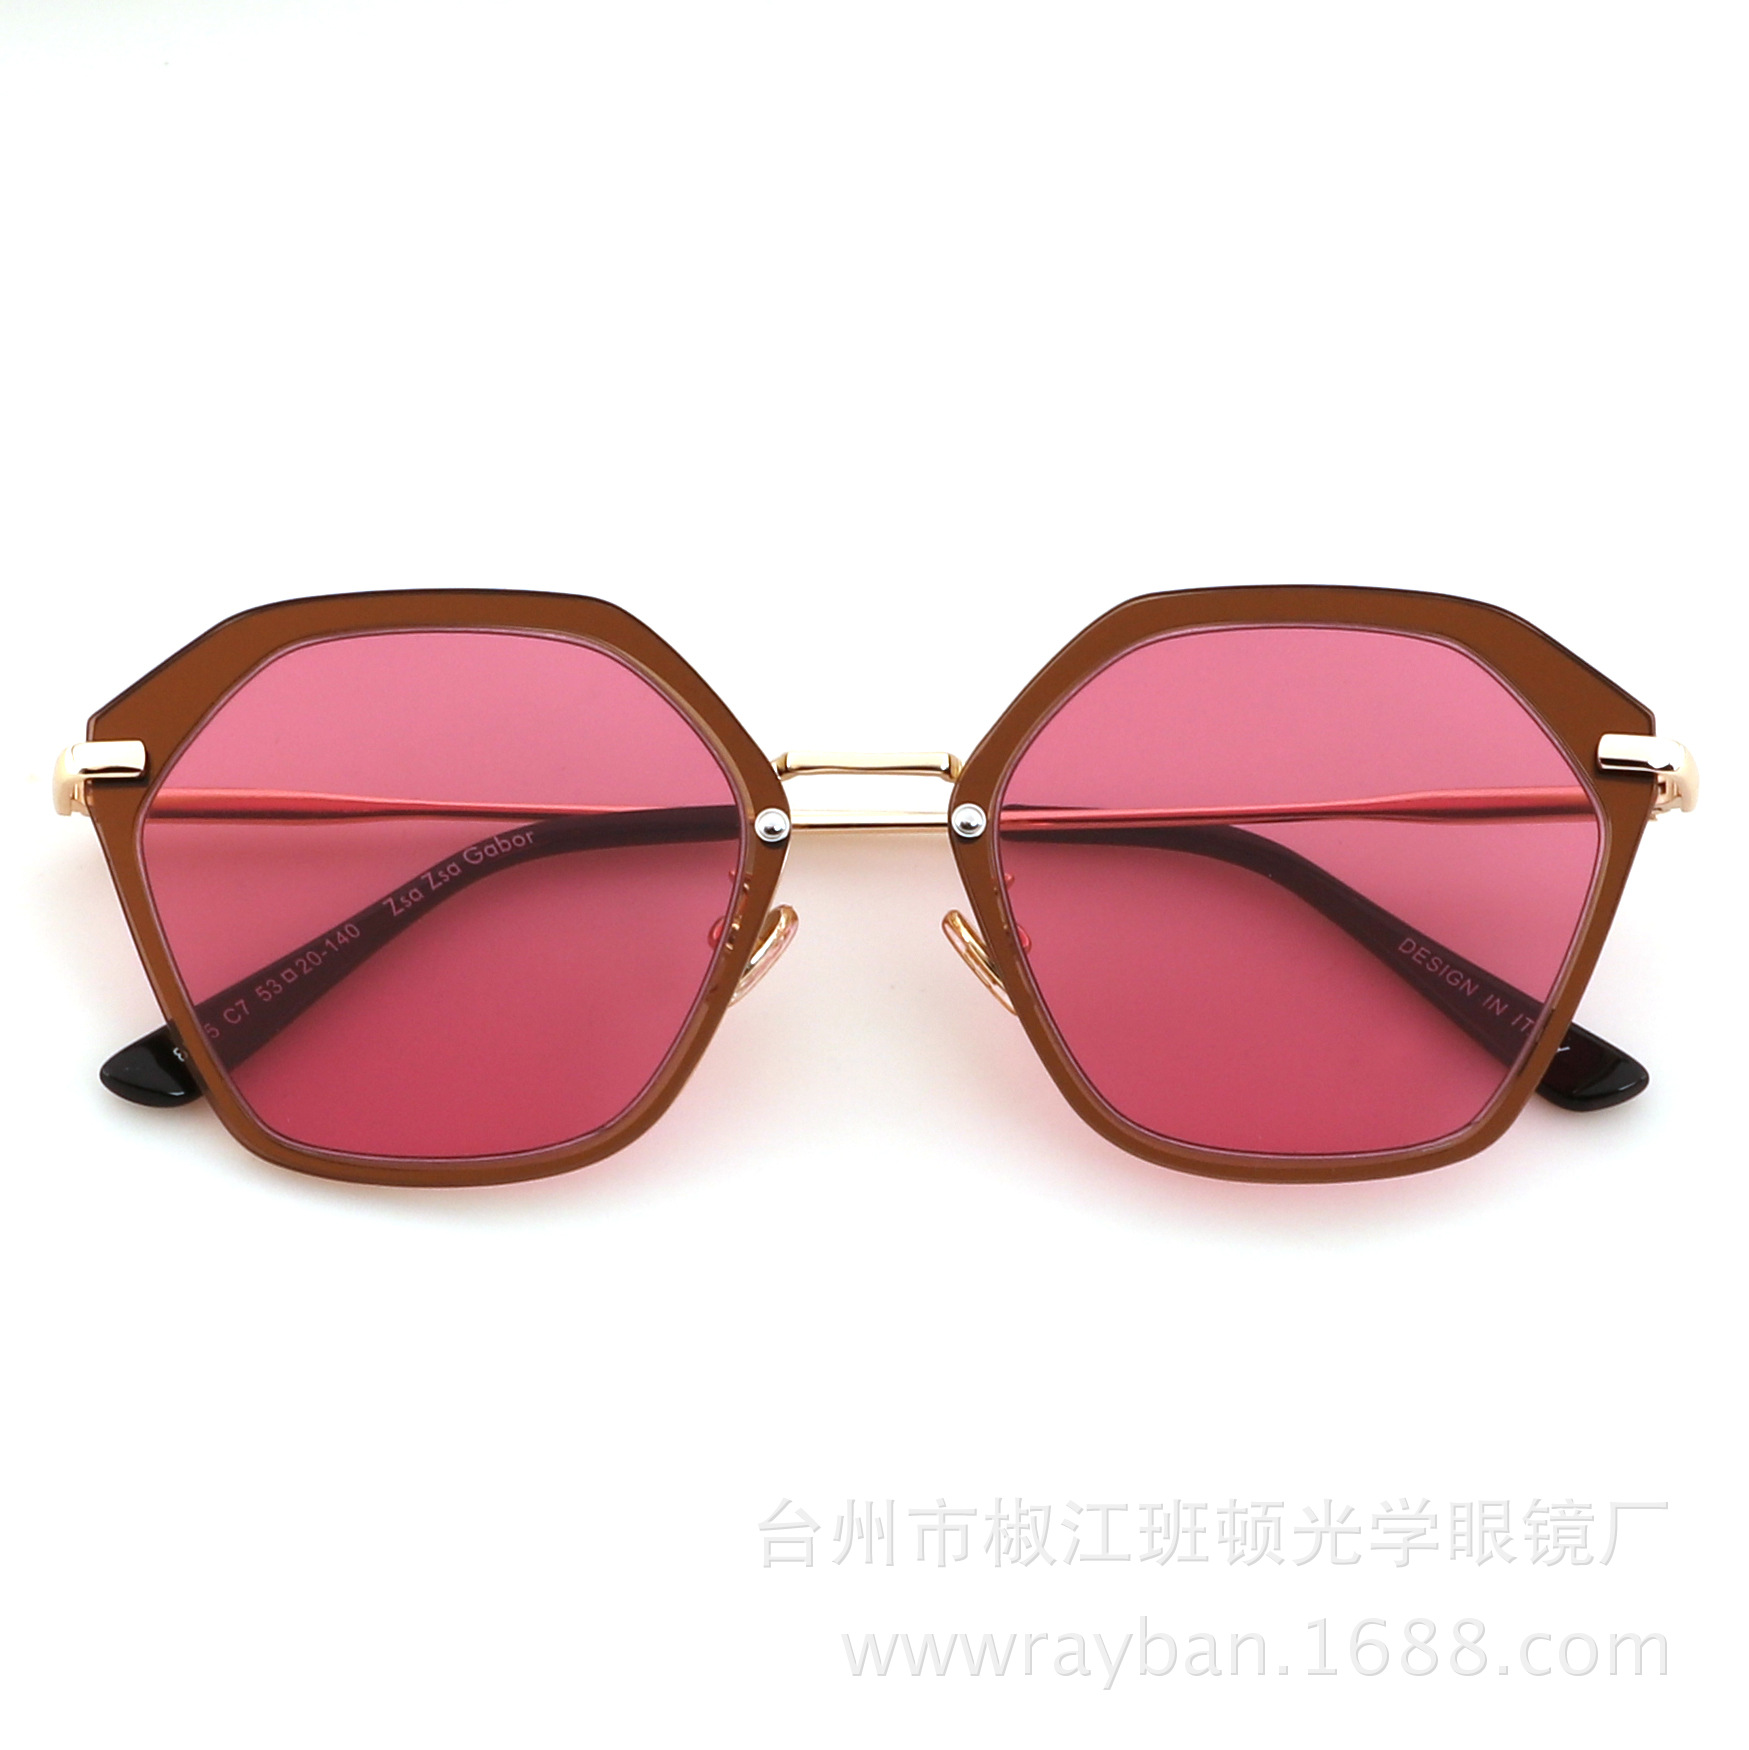 新款ZSA ZSA GABOR/085 彩色太阳镜男女款复古墨镜偏光眼镜工厂批